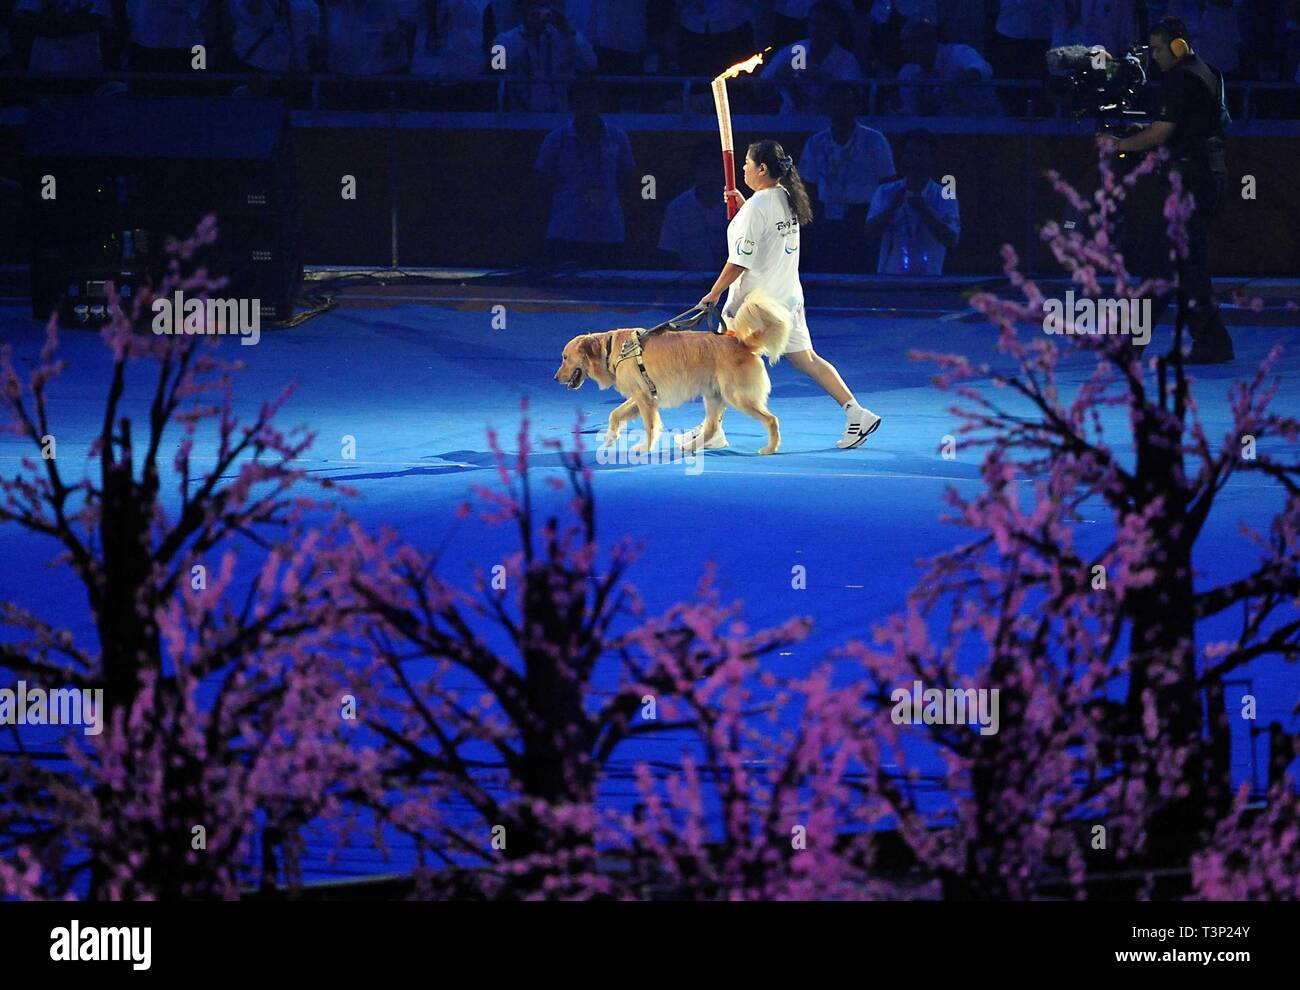 (190411) -- BEIJING, 11 de abril de 2019 (Xinhua) -- Foto de archivo tomada el 6 de septiembre de 2008 muestra Torchbearer Ping Yali, el primer medallista de oro Paralímpico chino en 1984, los relés con un perro guía durante la ceremonia de apertura de los Juegos Paralímpicos de Beijing 2008 en el Estadio Nacional de Beijing, China. Enviar atletas para los Juegos Olímpicos de Verano de Helsinki por primera vez en 1952 al ganar la candidatura para albergar los Juegos Olímpicos de Invierno de 2022 en 2015, la República Popular de China pasó a través de una notable historia de deportes, incluyendo nuestro éxito en la celebración de los Juegos Olímpicos de Verano de 2008 y preparar para Foto de stock